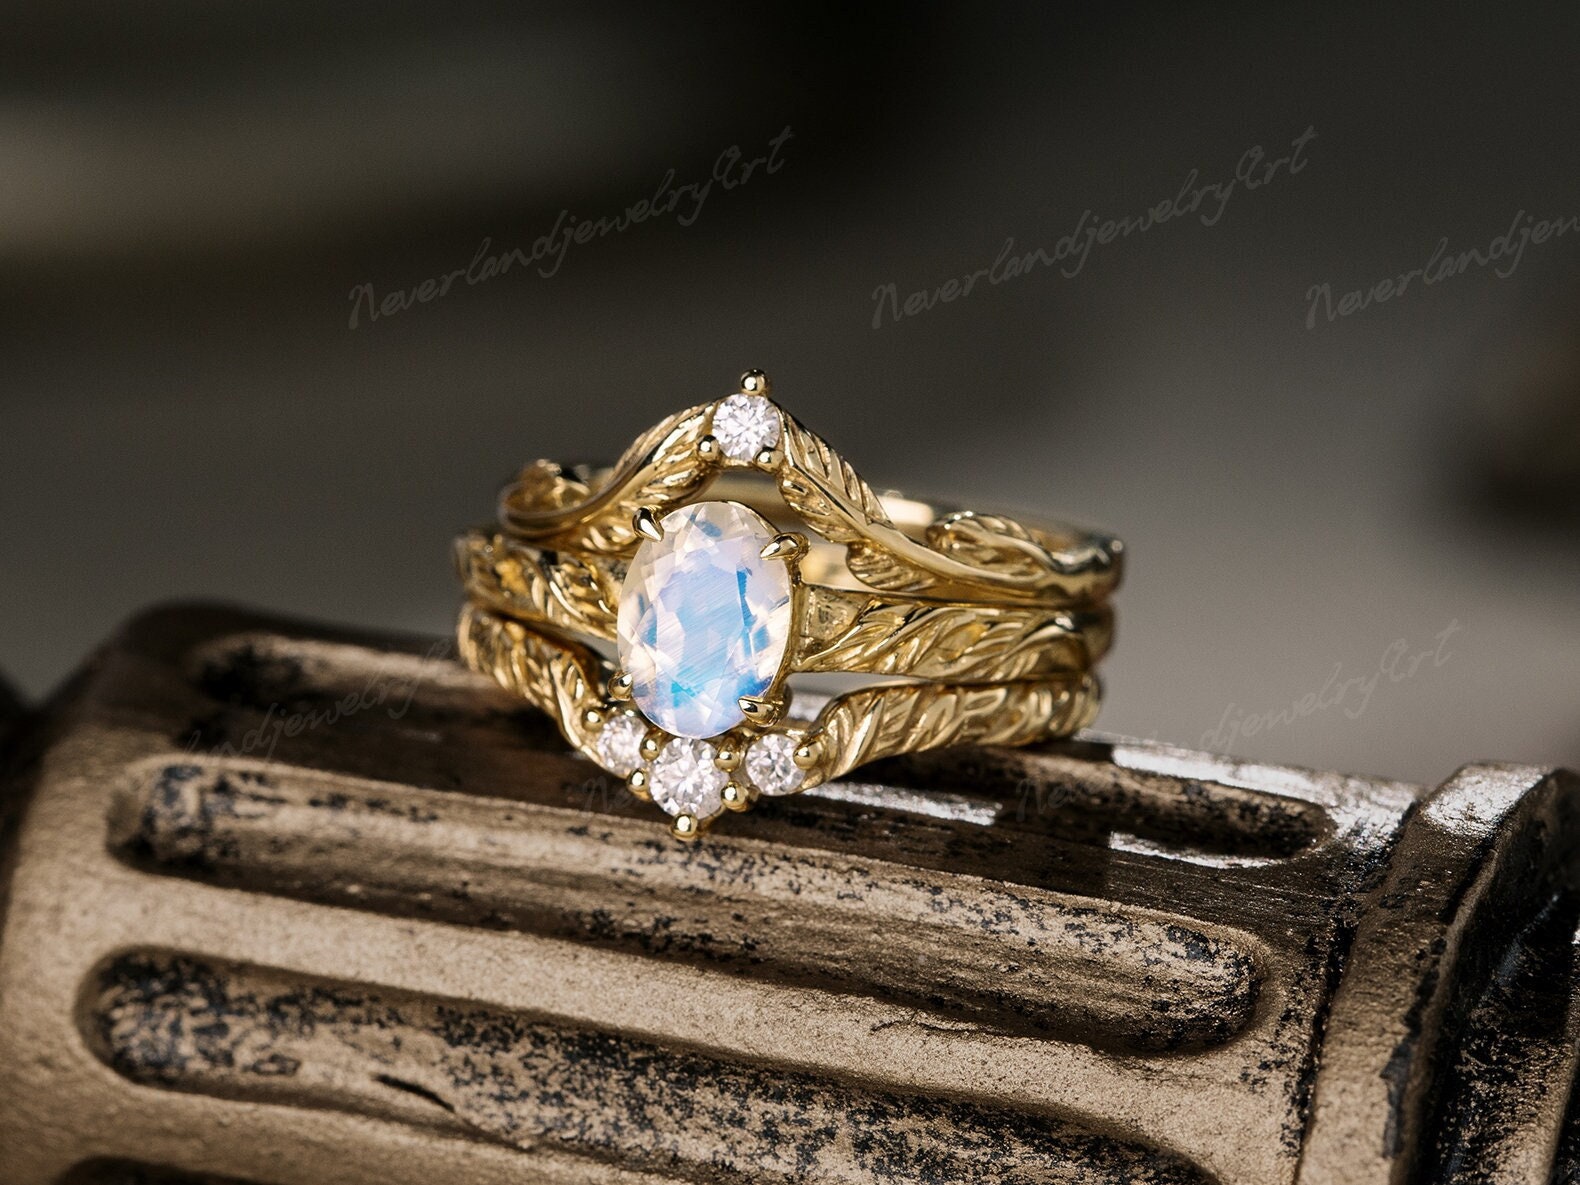 Einzigartiger Ovalschliff Mondstein Verlobungsring Set Gelb Gold Ringe Natur Inspiriert Blätter Graviert 3 Stück Ring Vintage Diamant Ehering von NeverlandjewelryArt